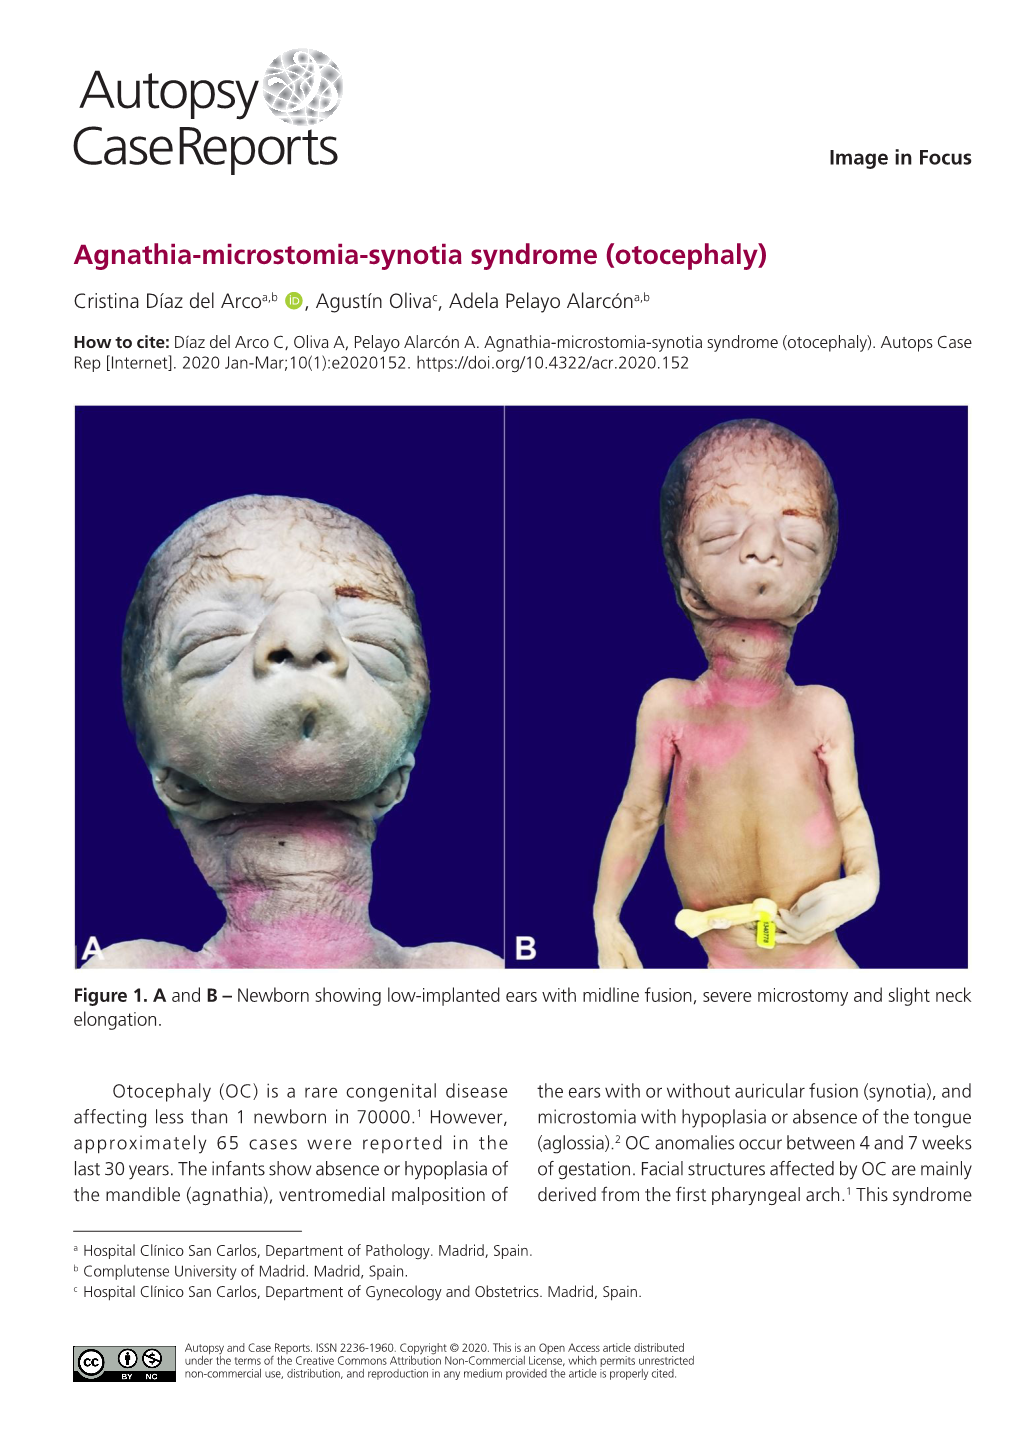 Agnathia-Microstomia-Synotia Syndrome (Otocephaly)